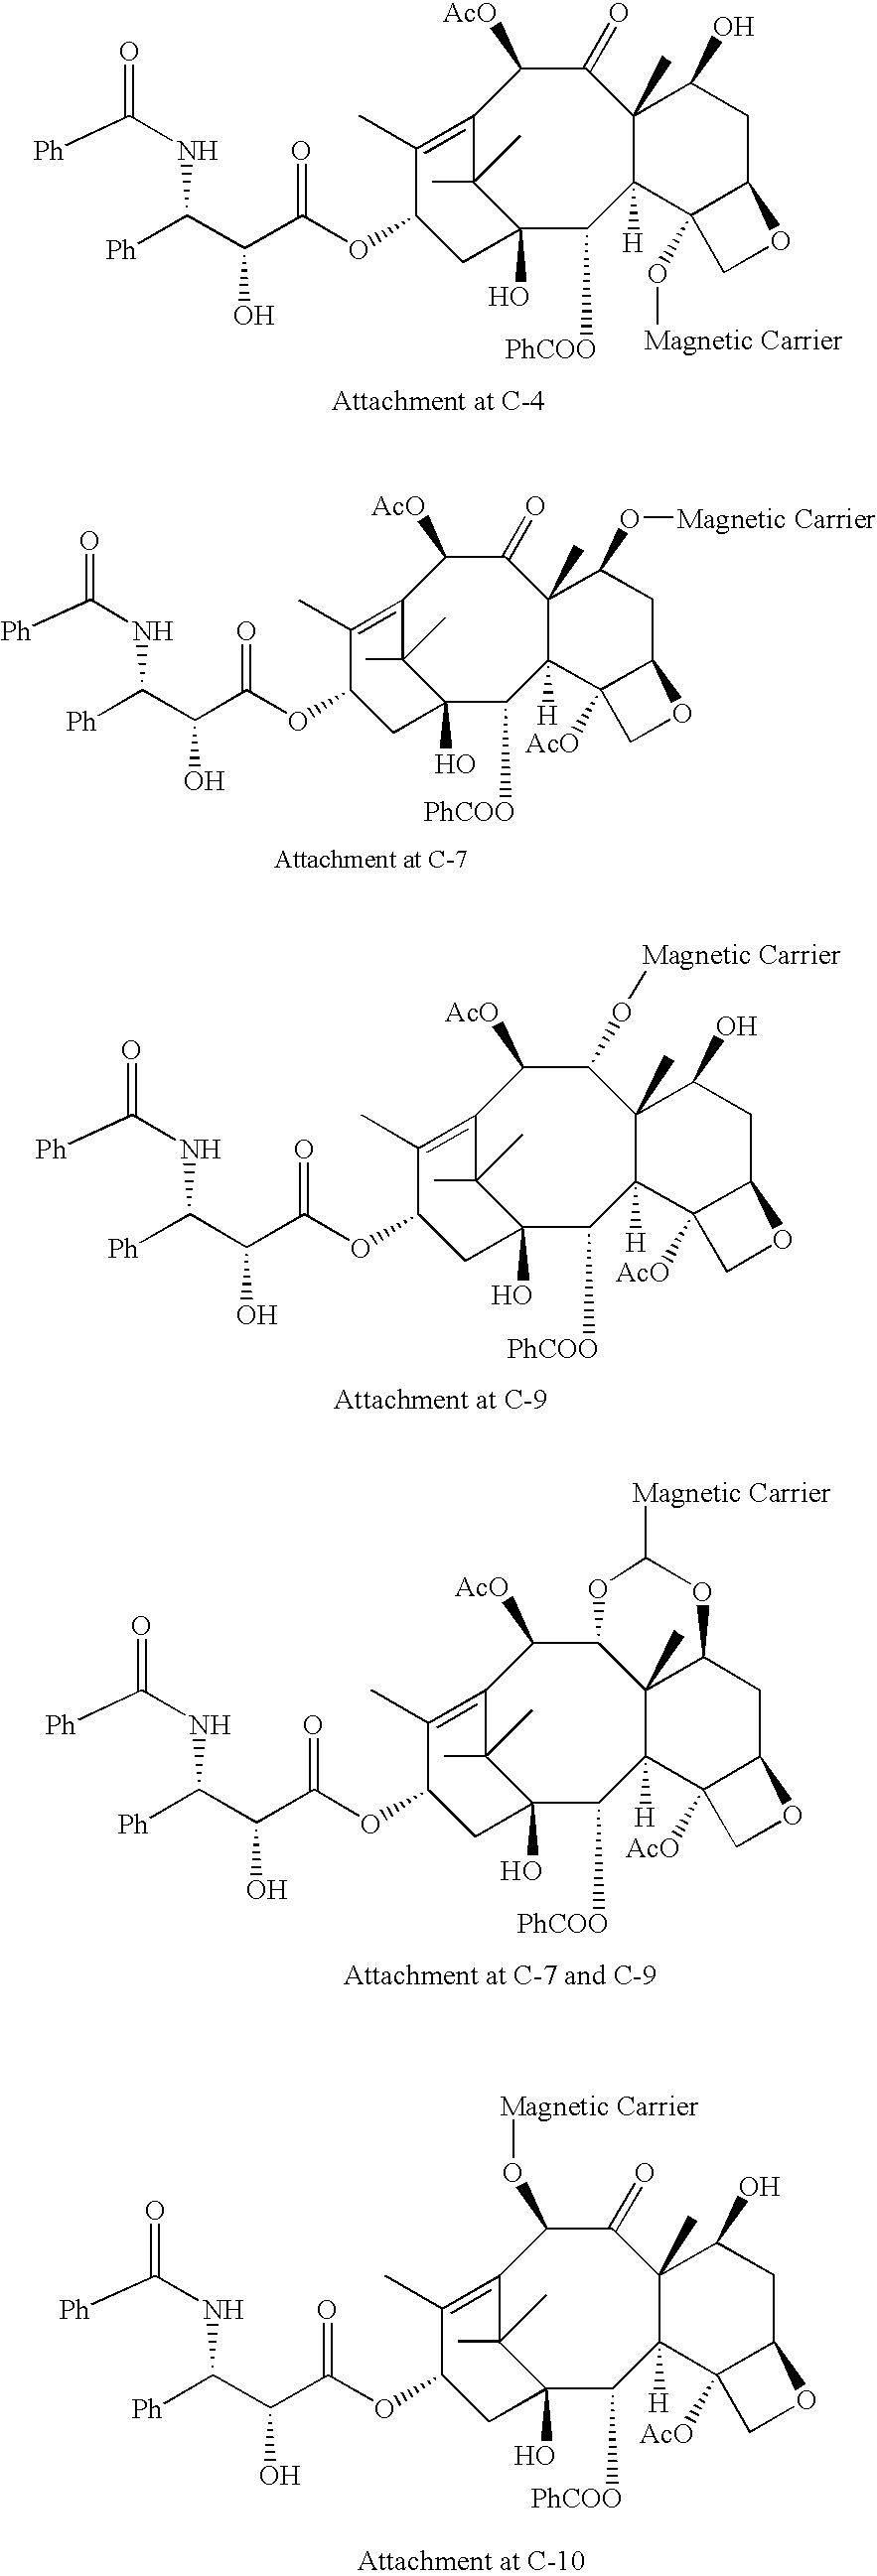 Anti-mitotic compound